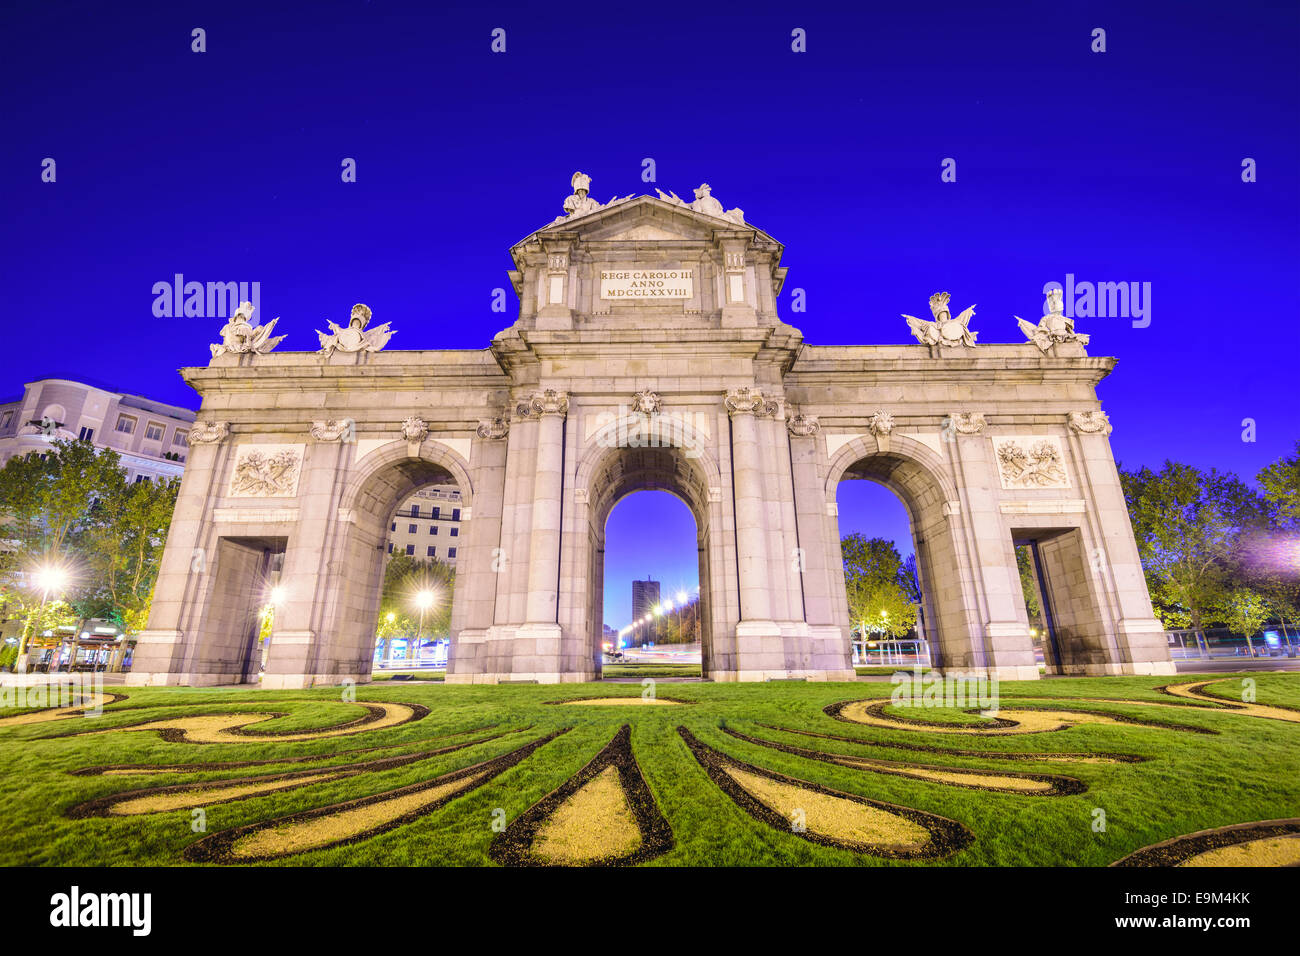 Puerta de Alcala gate à Madrid, Espagne. Banque D'Images